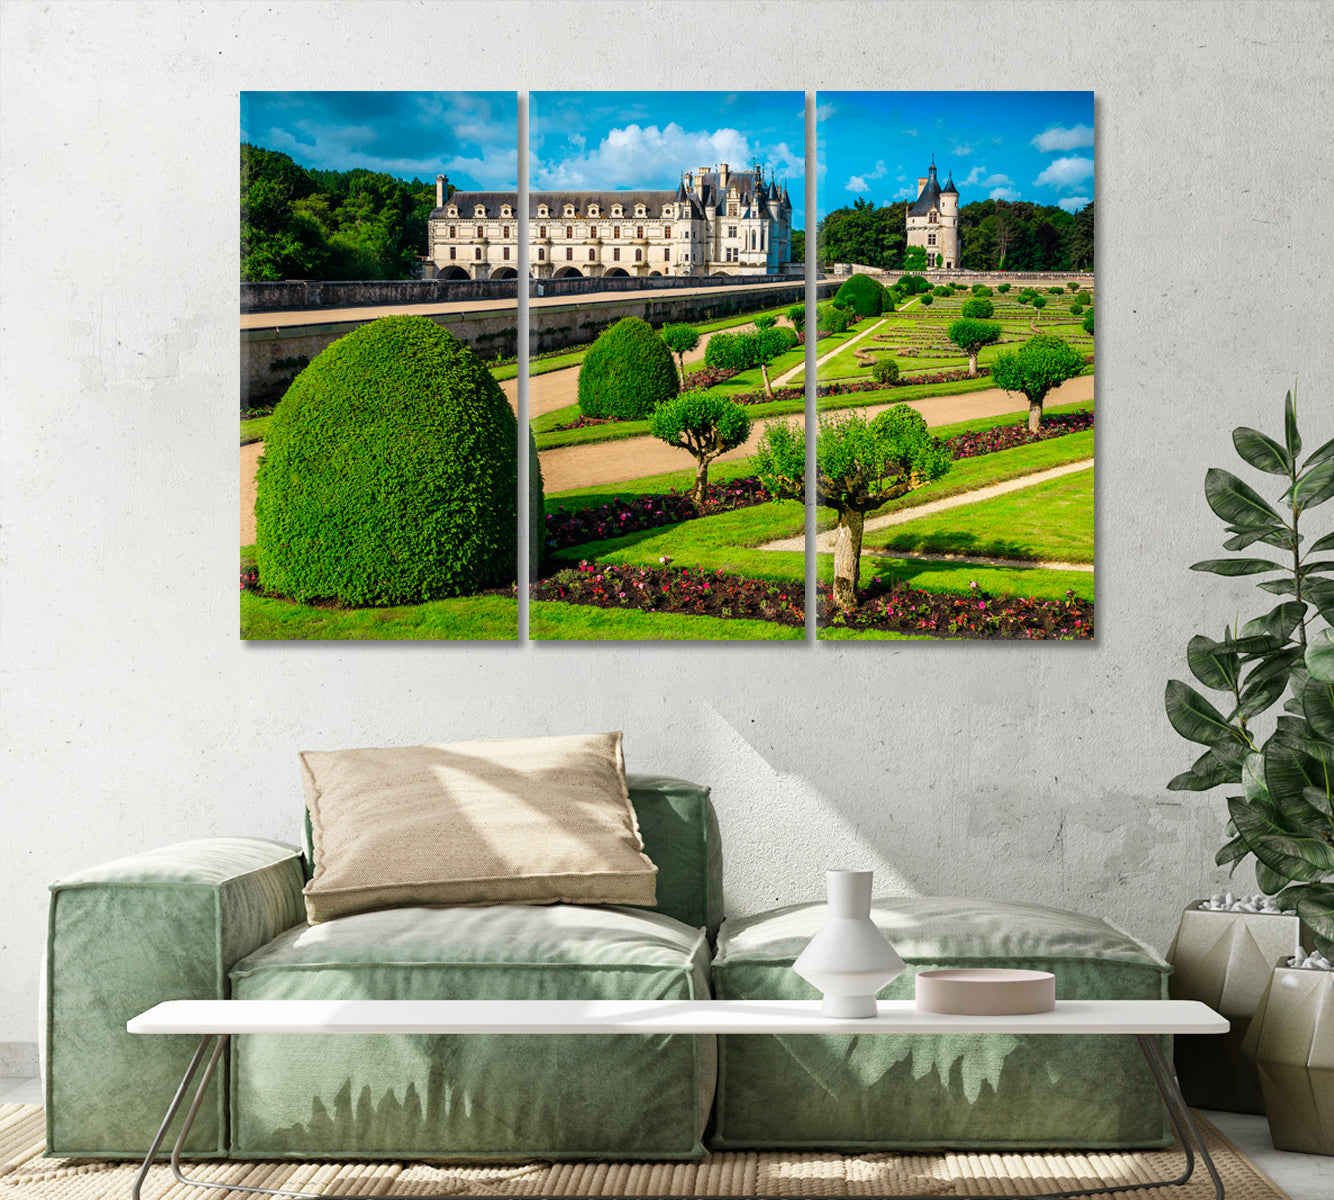 Chenonceau Castle Loire Valley France Canvas Print-Canvas Print-CetArt-1 Panel-24x16 inches-CetArt